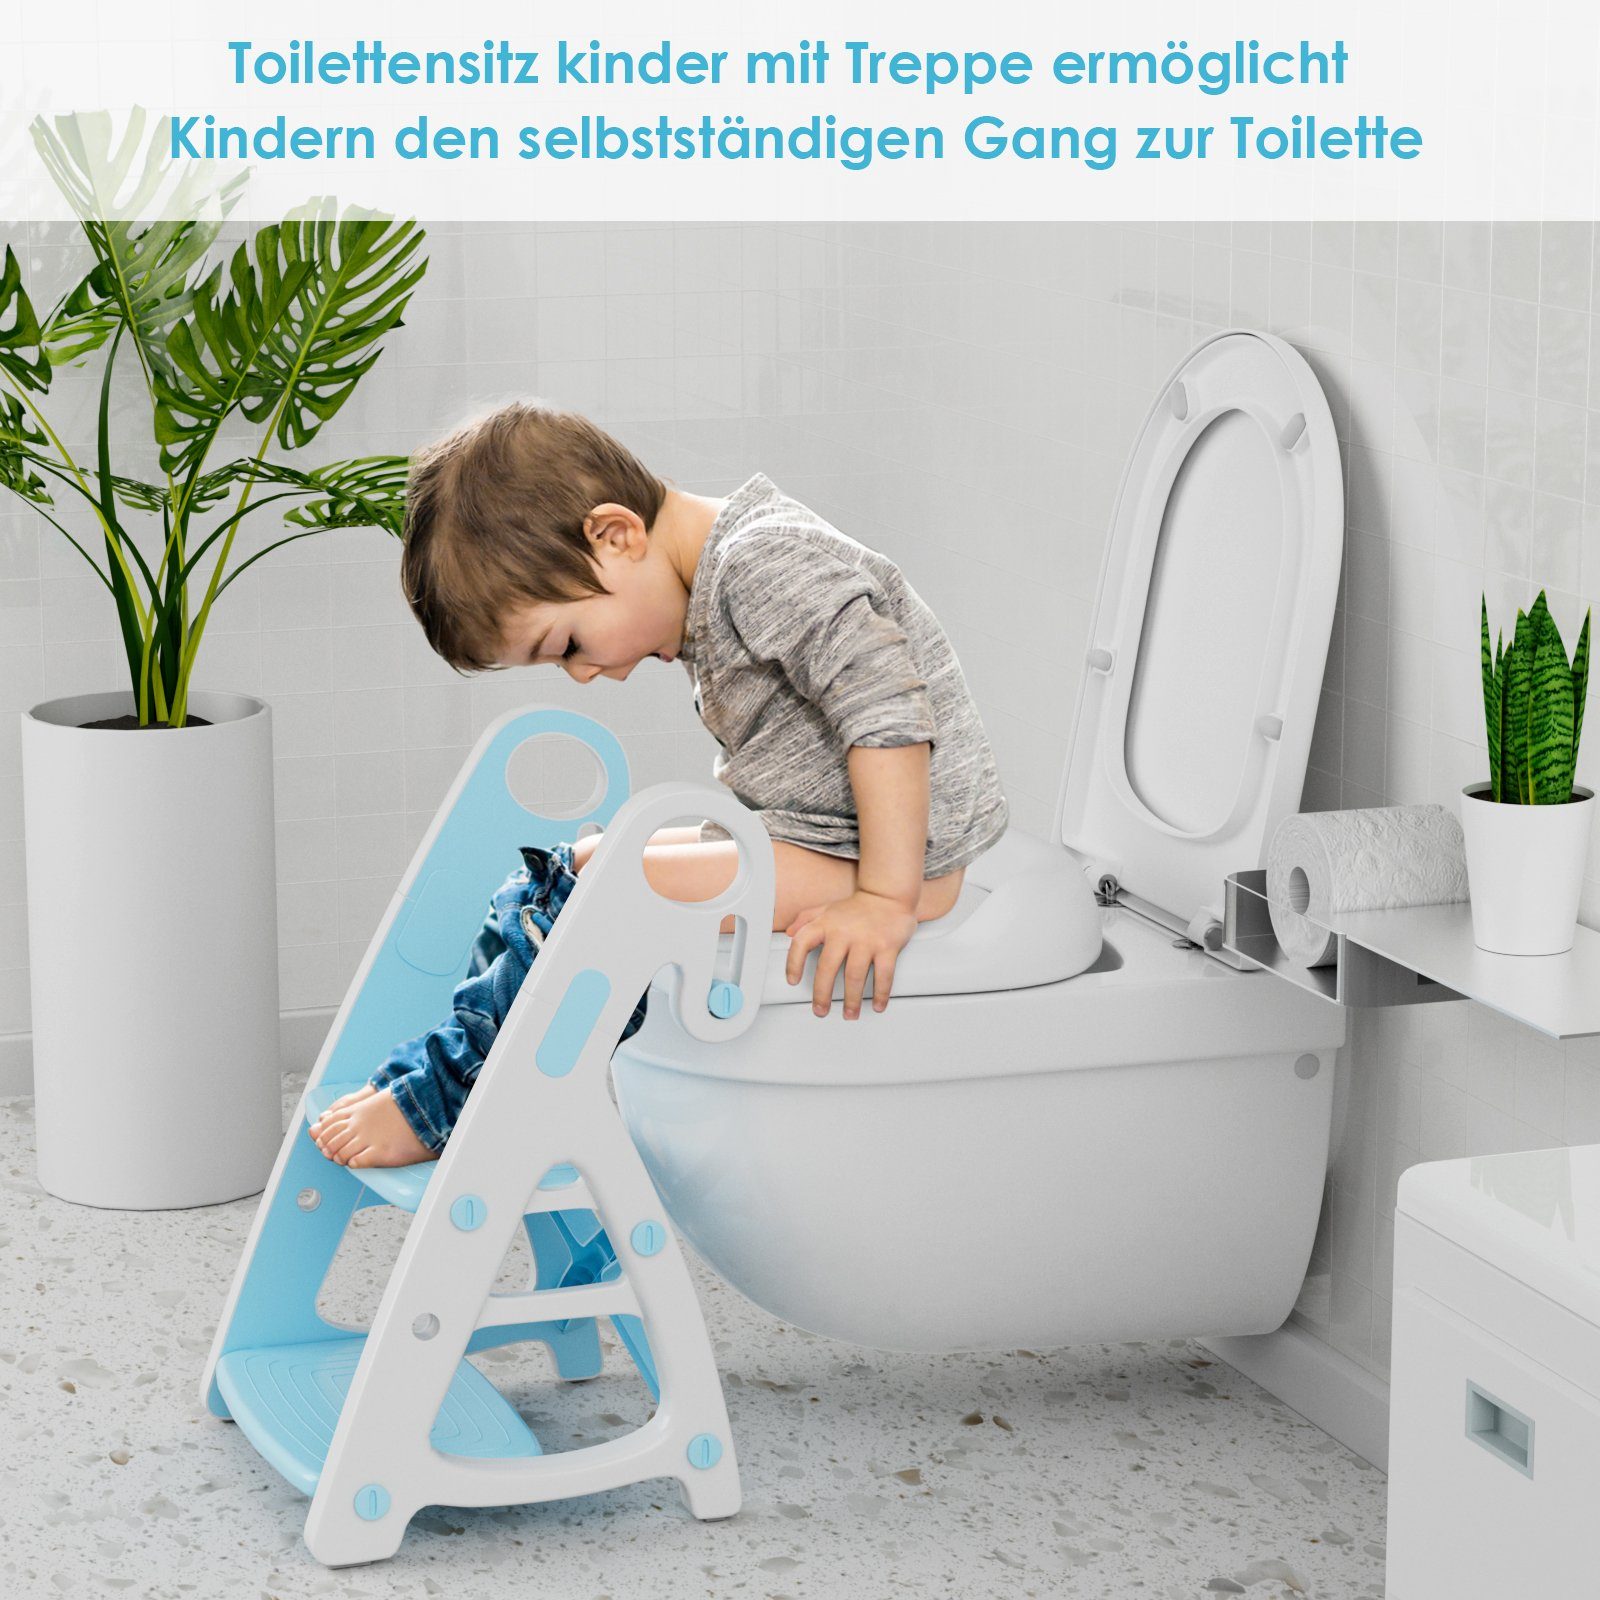 Blau Toilettensitz Toilettensitz 2 1 mit TLGREEN in Toilettentrainer Tritthocker Kinder mit Treppe, Baby